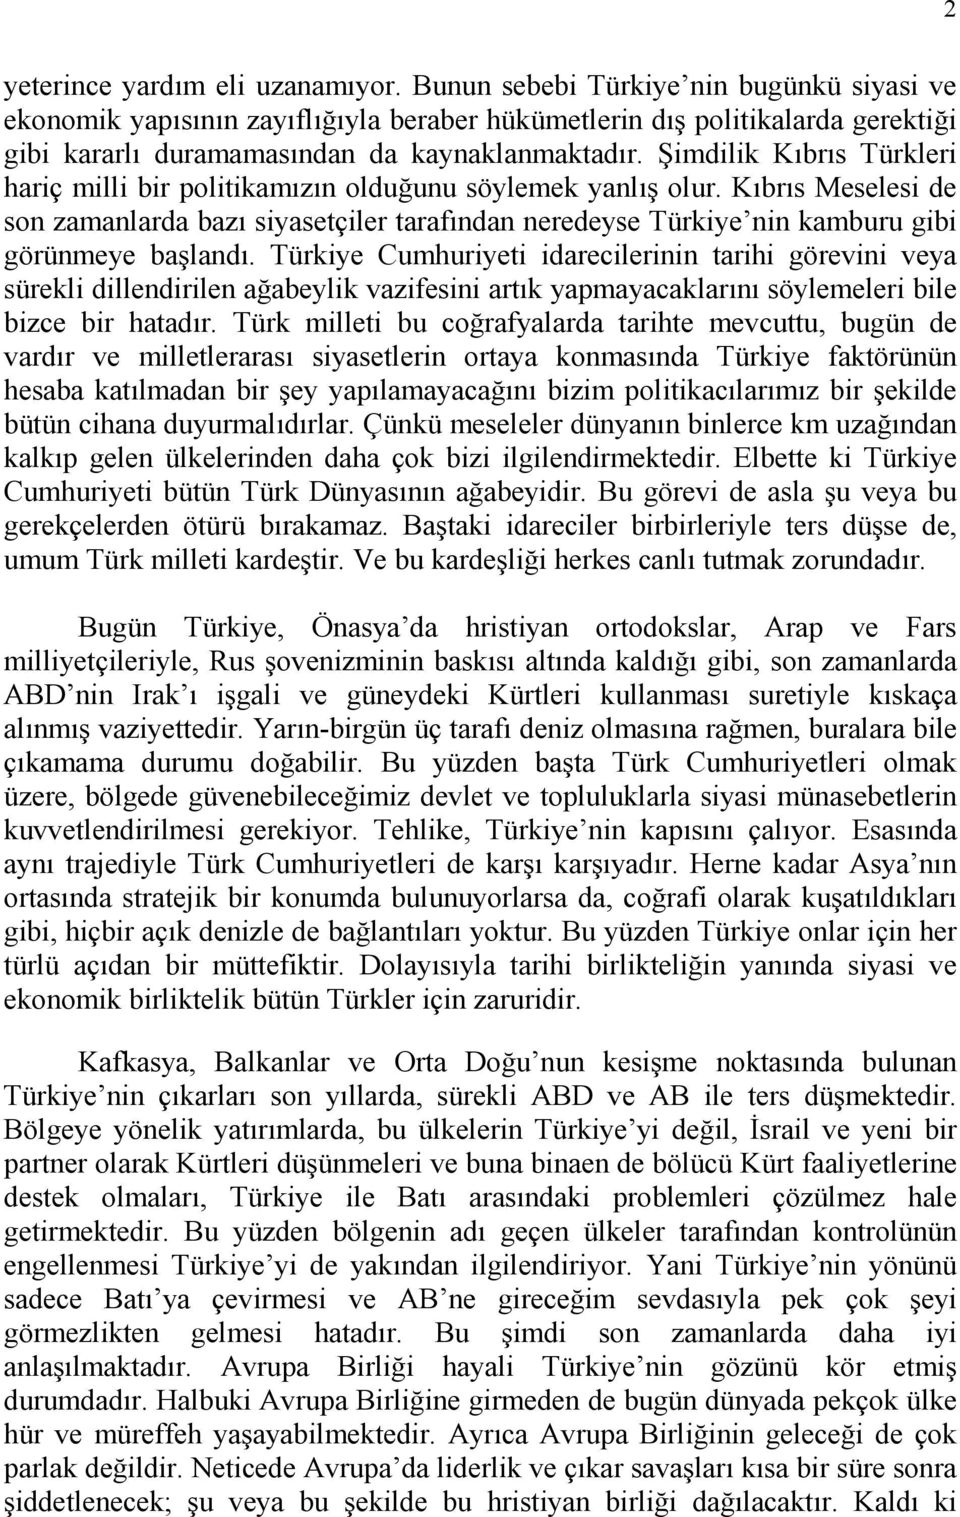 Şimdilik Kıbrıs Türkleri hariç milli bir politikamızın olduğunu söylemek yanlış olur.